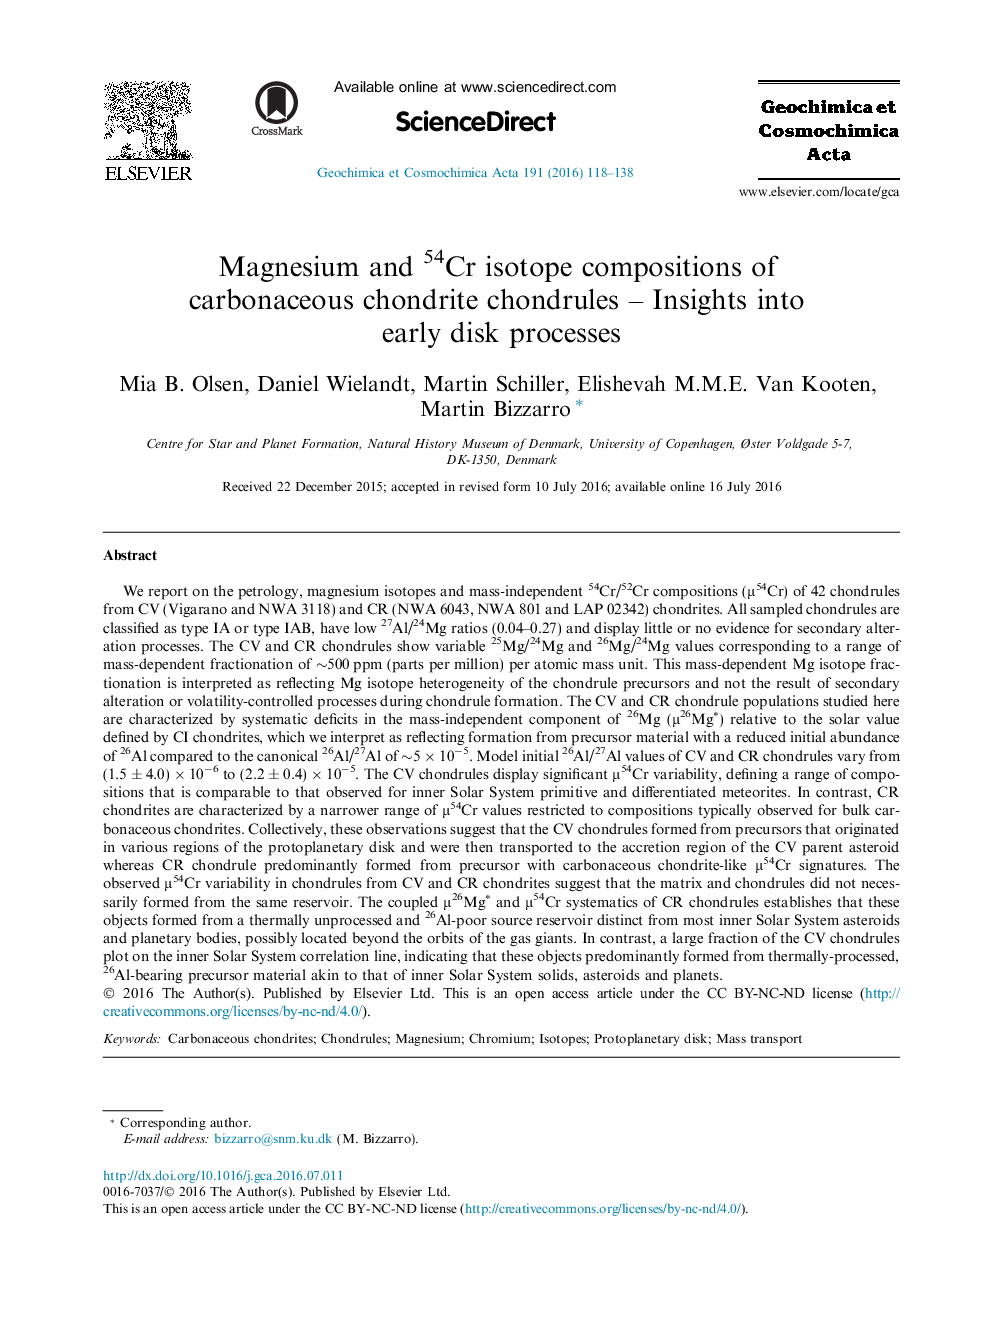 ترکیبات ایزوتوپی منیزیم و 54 کرون از کانتر های کاندید کانتری - بینش در فرآیند دیسک اولیه 